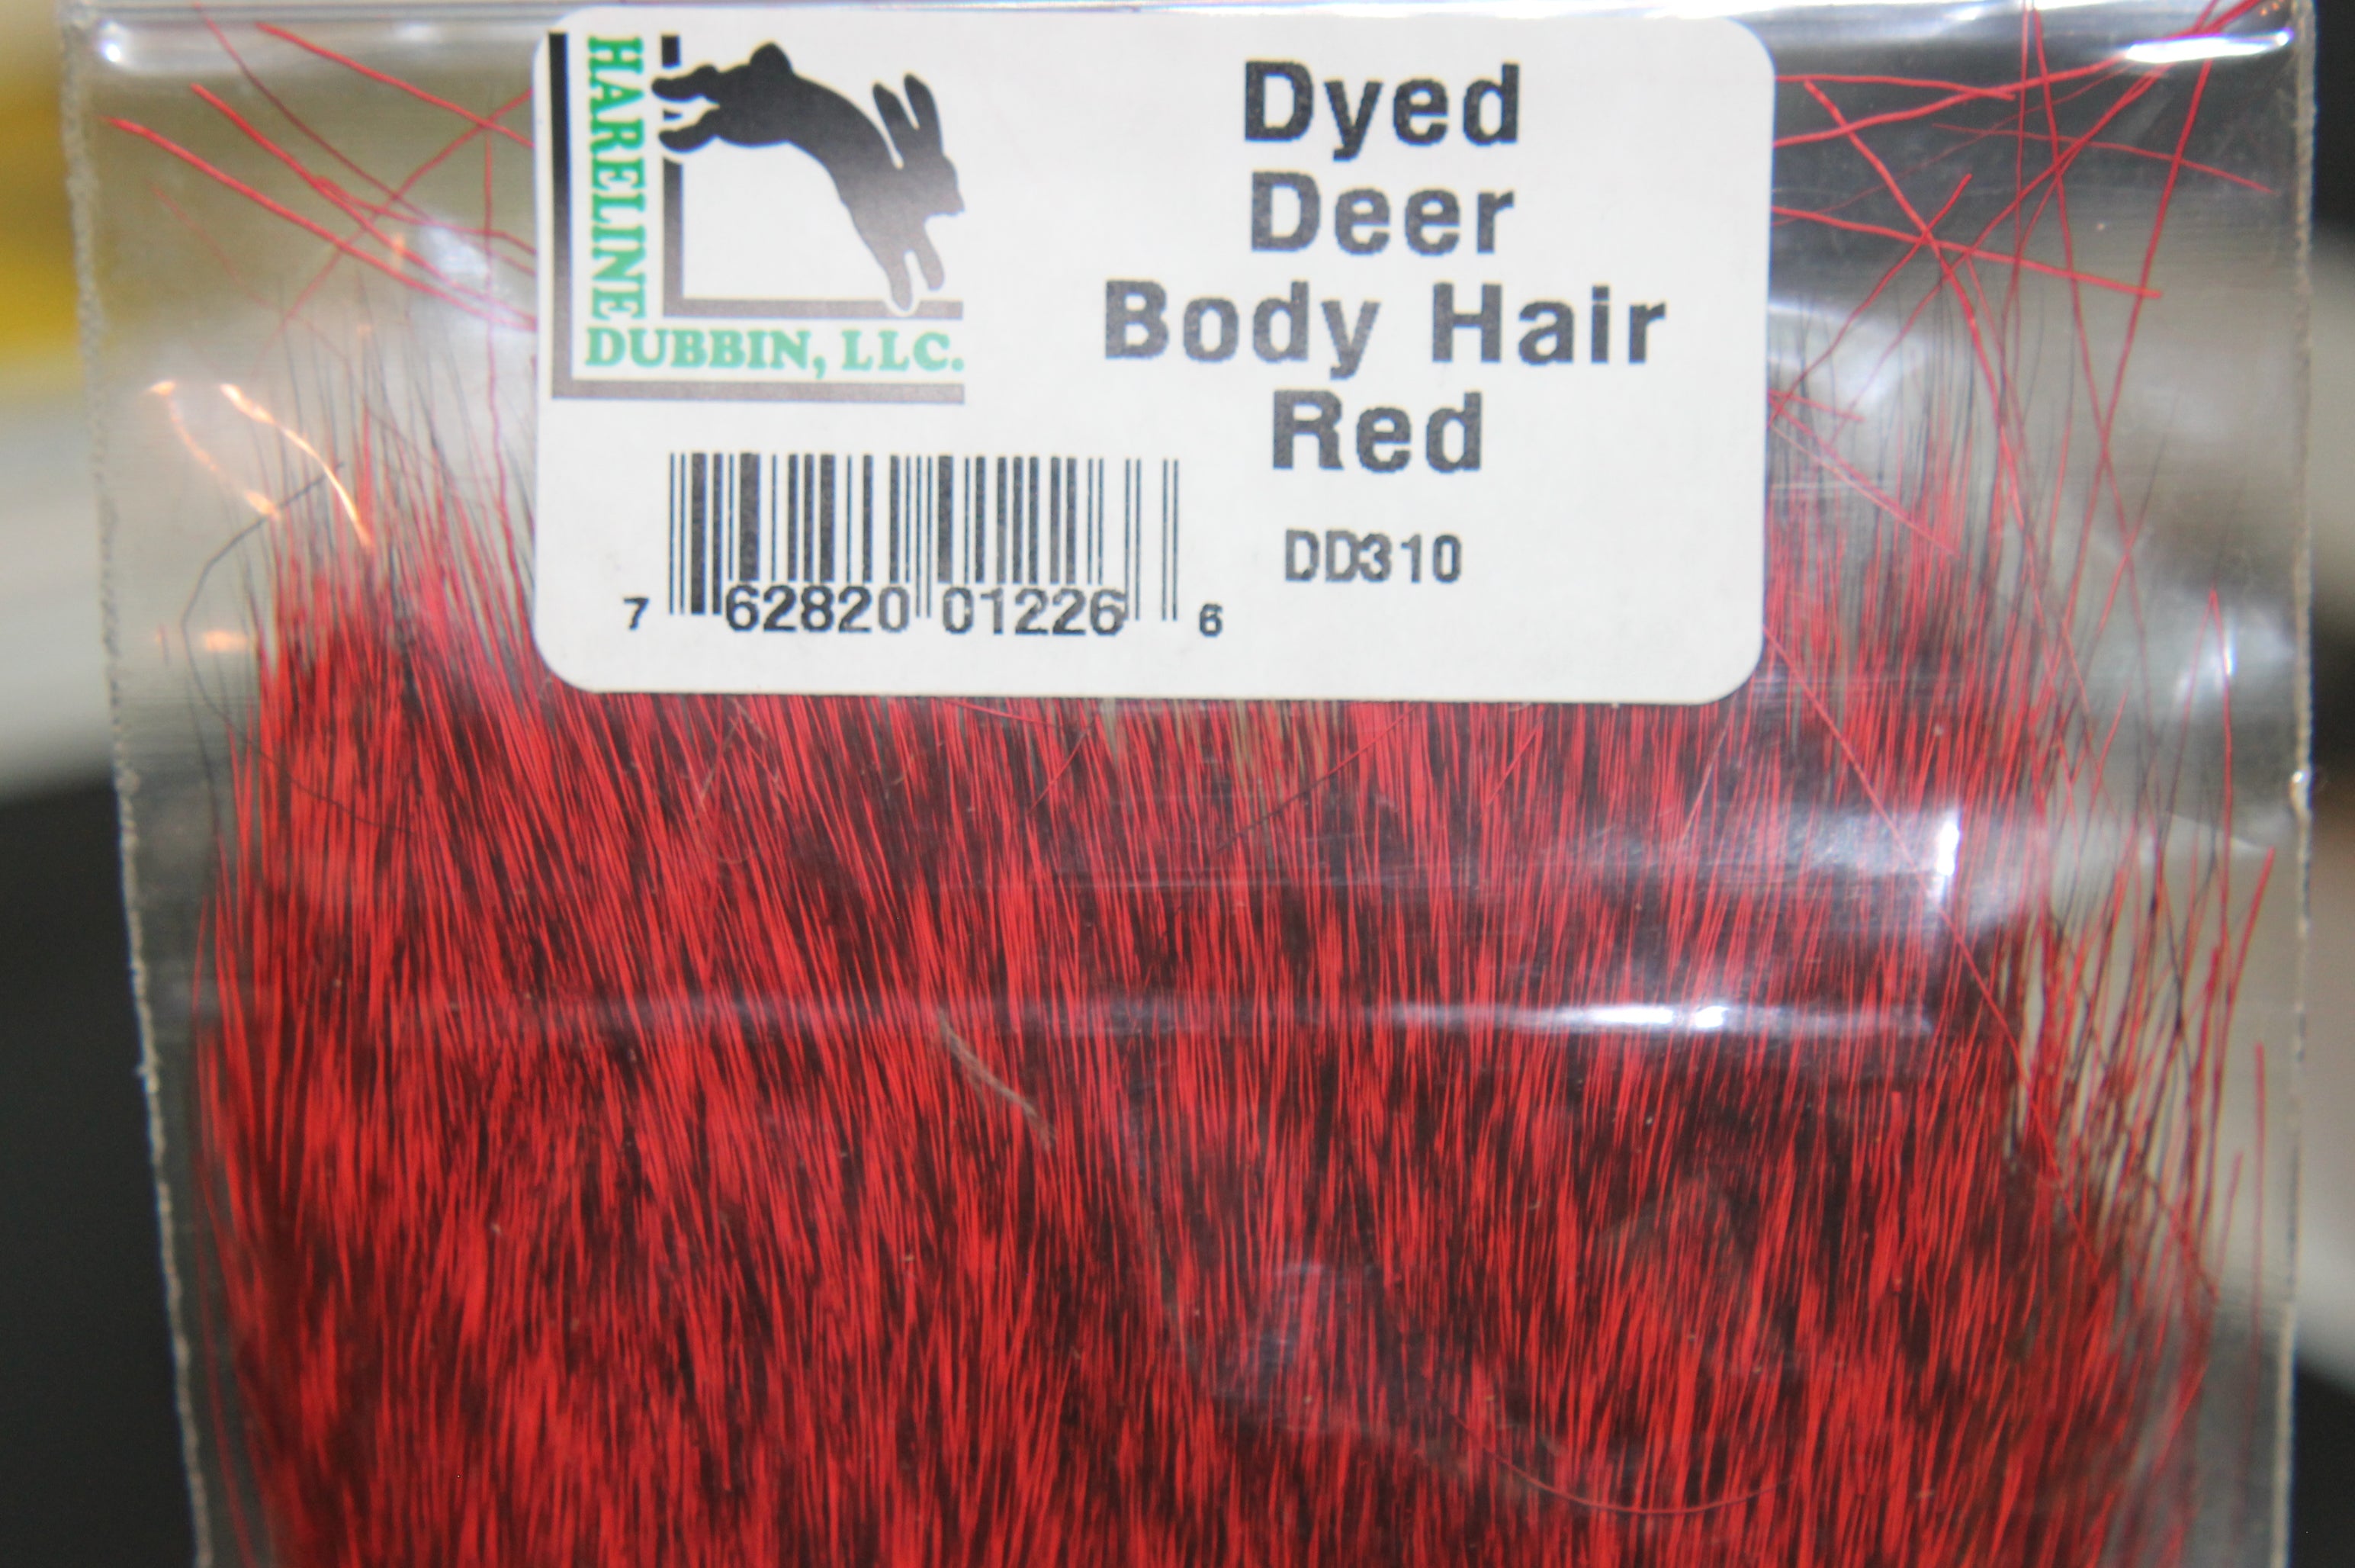 Dyed Deer Body Hair